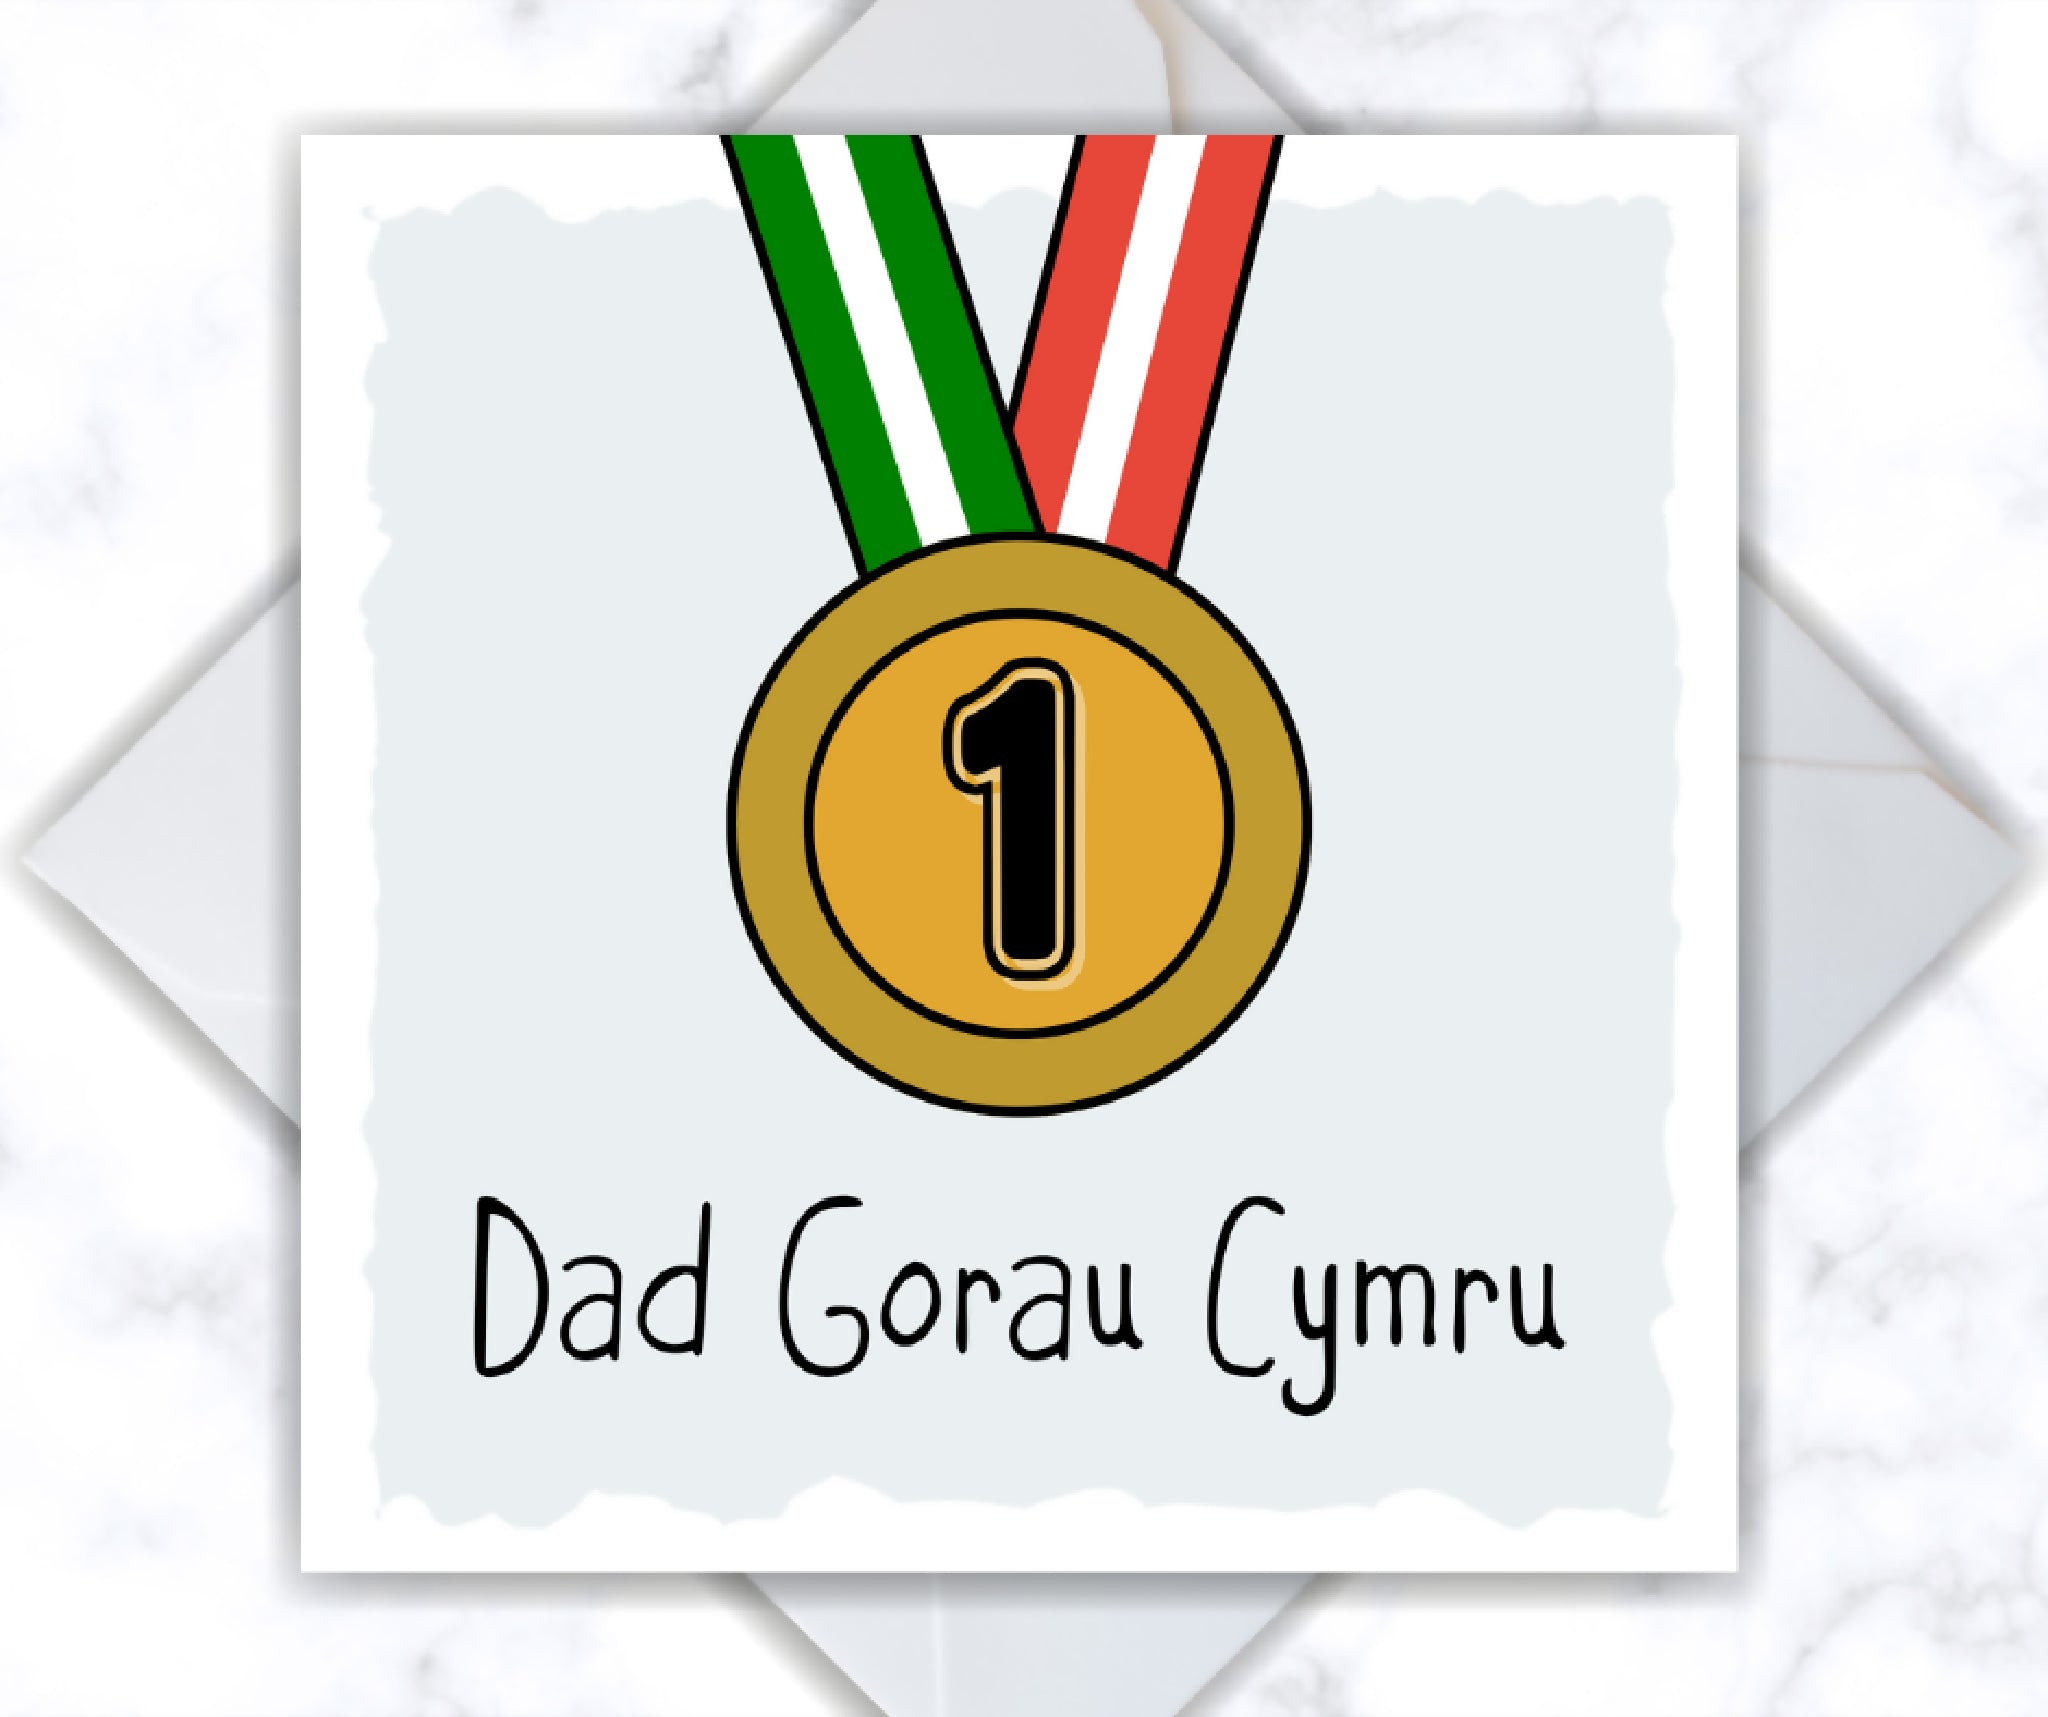 Cerdyn Sul y Tadau "Dad Gorau Cymru", Welsh "Dad Gorau Cymru" Father's Day Card